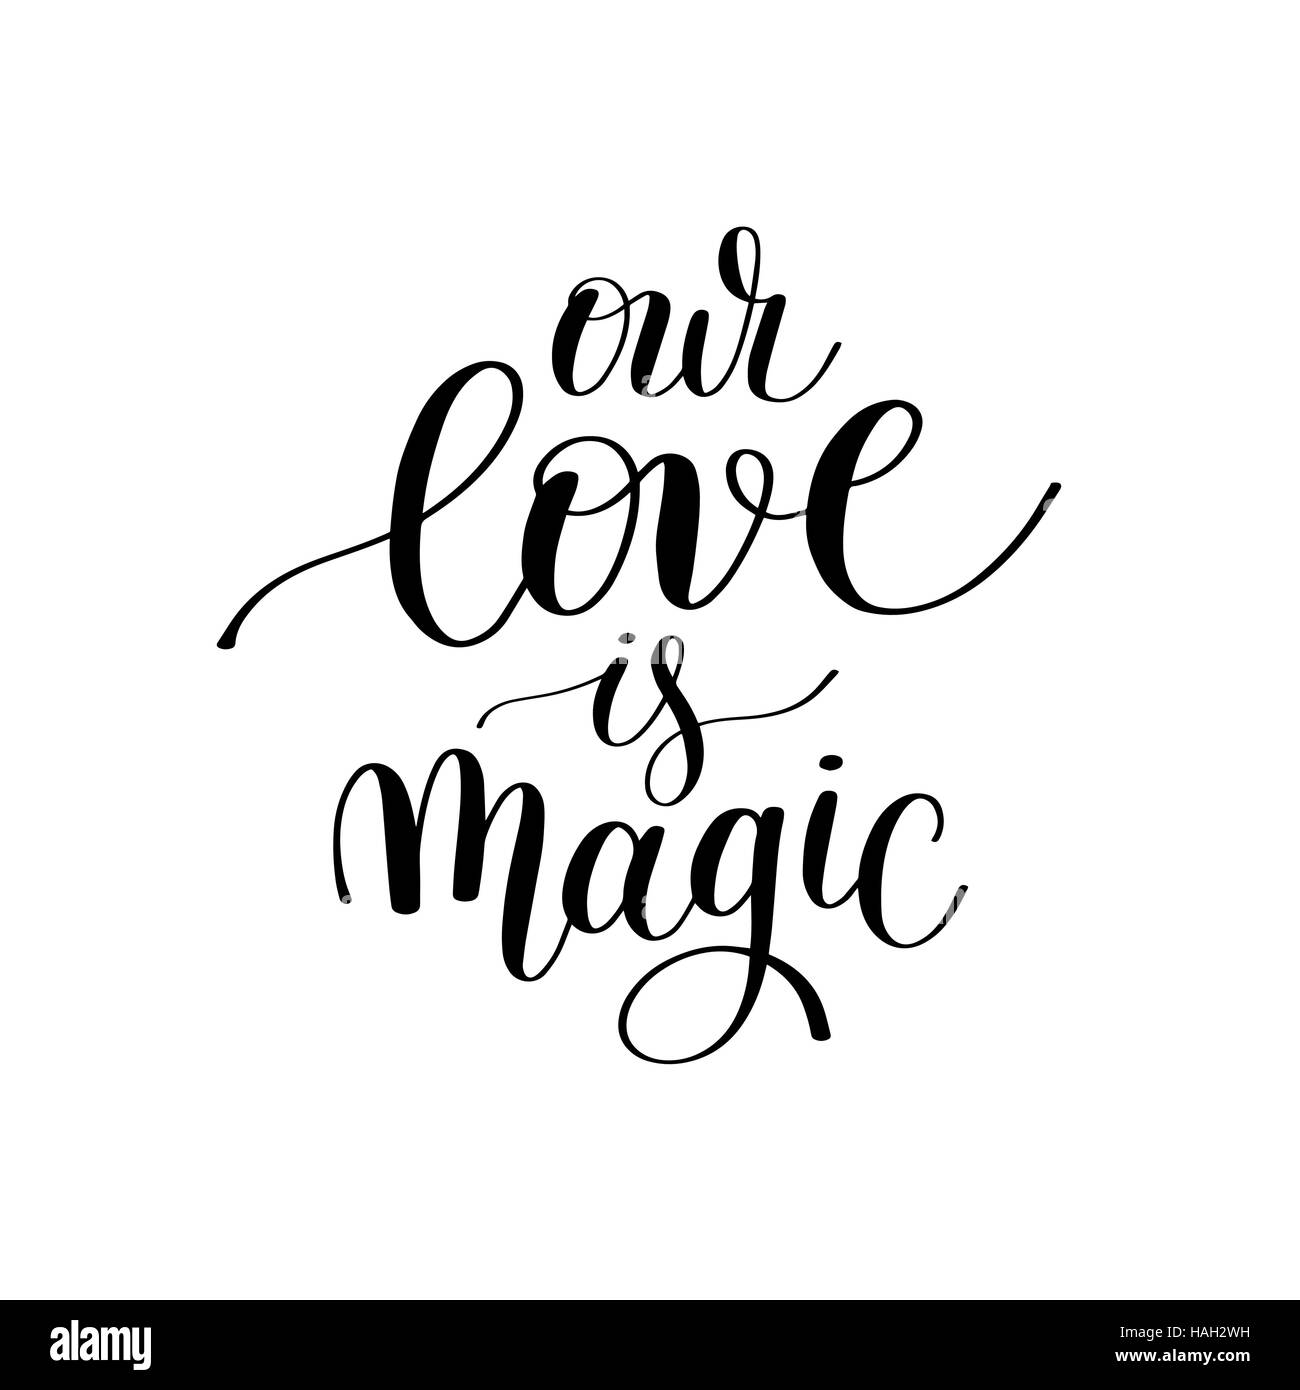 Unsere Liebe ist Magie handgeschriebene Schrift Zitat über die Liebe Vale Stock Vektor